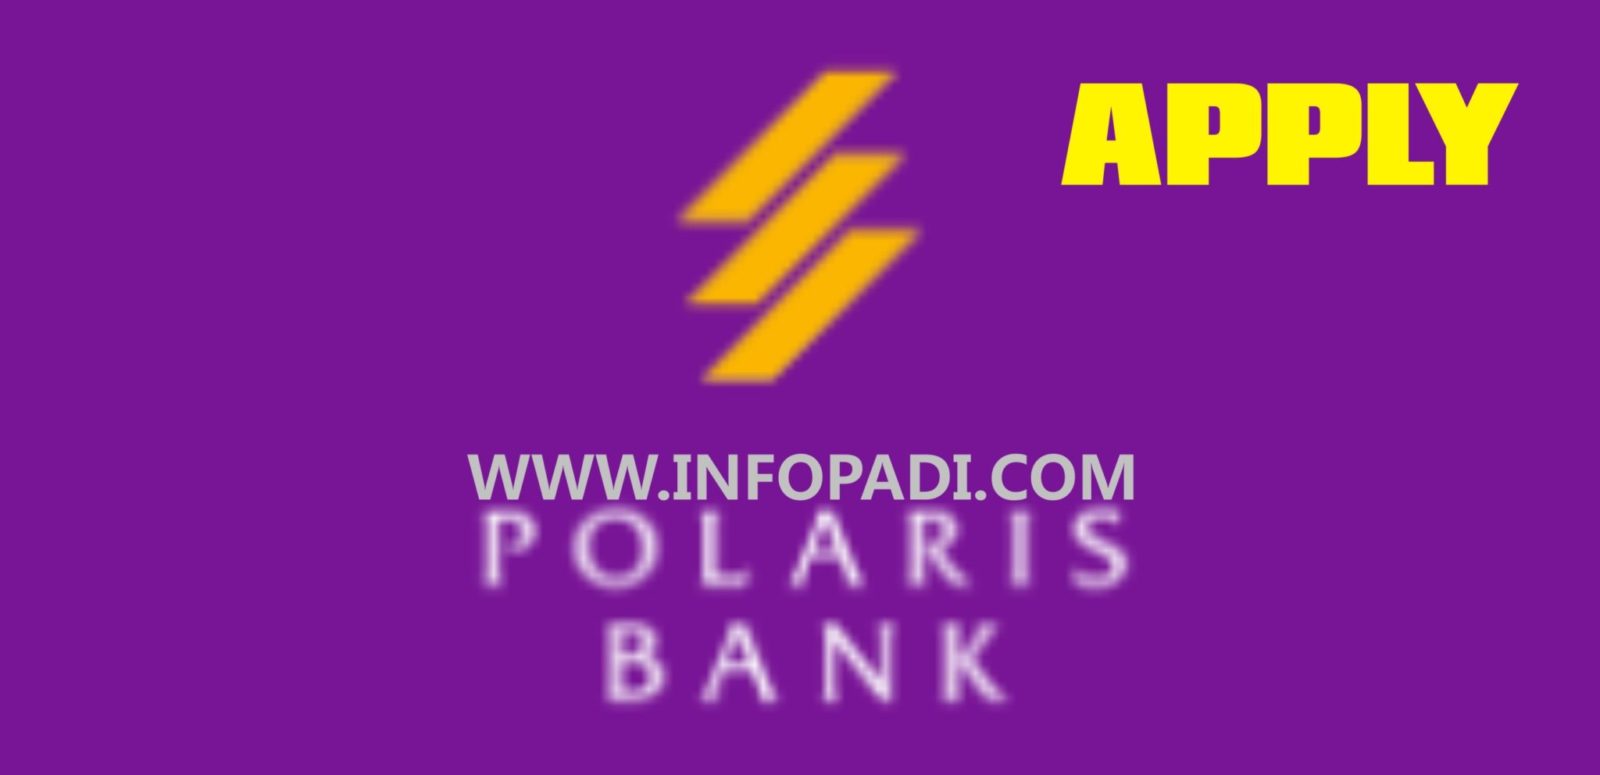 polaris synchrony bank bill pay